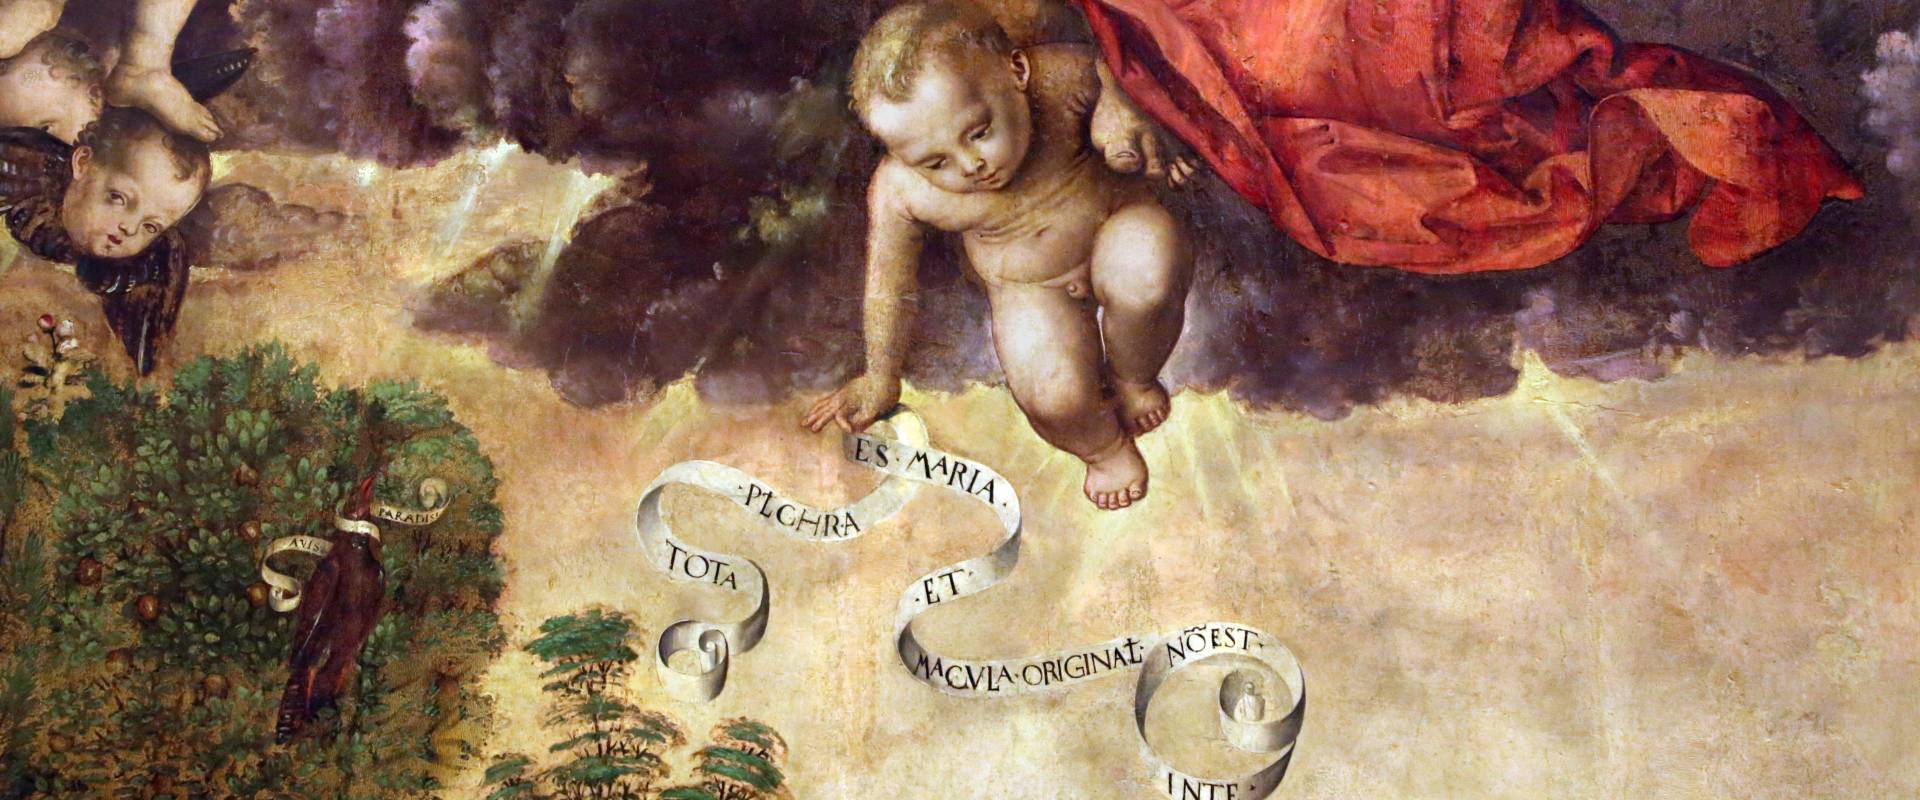 Francesco zaganelli da cotignola, concezione della vergine, 1513, da s. biagio in s. girolamo a forlì, 03 angelo con cartiglio photo by Sailko